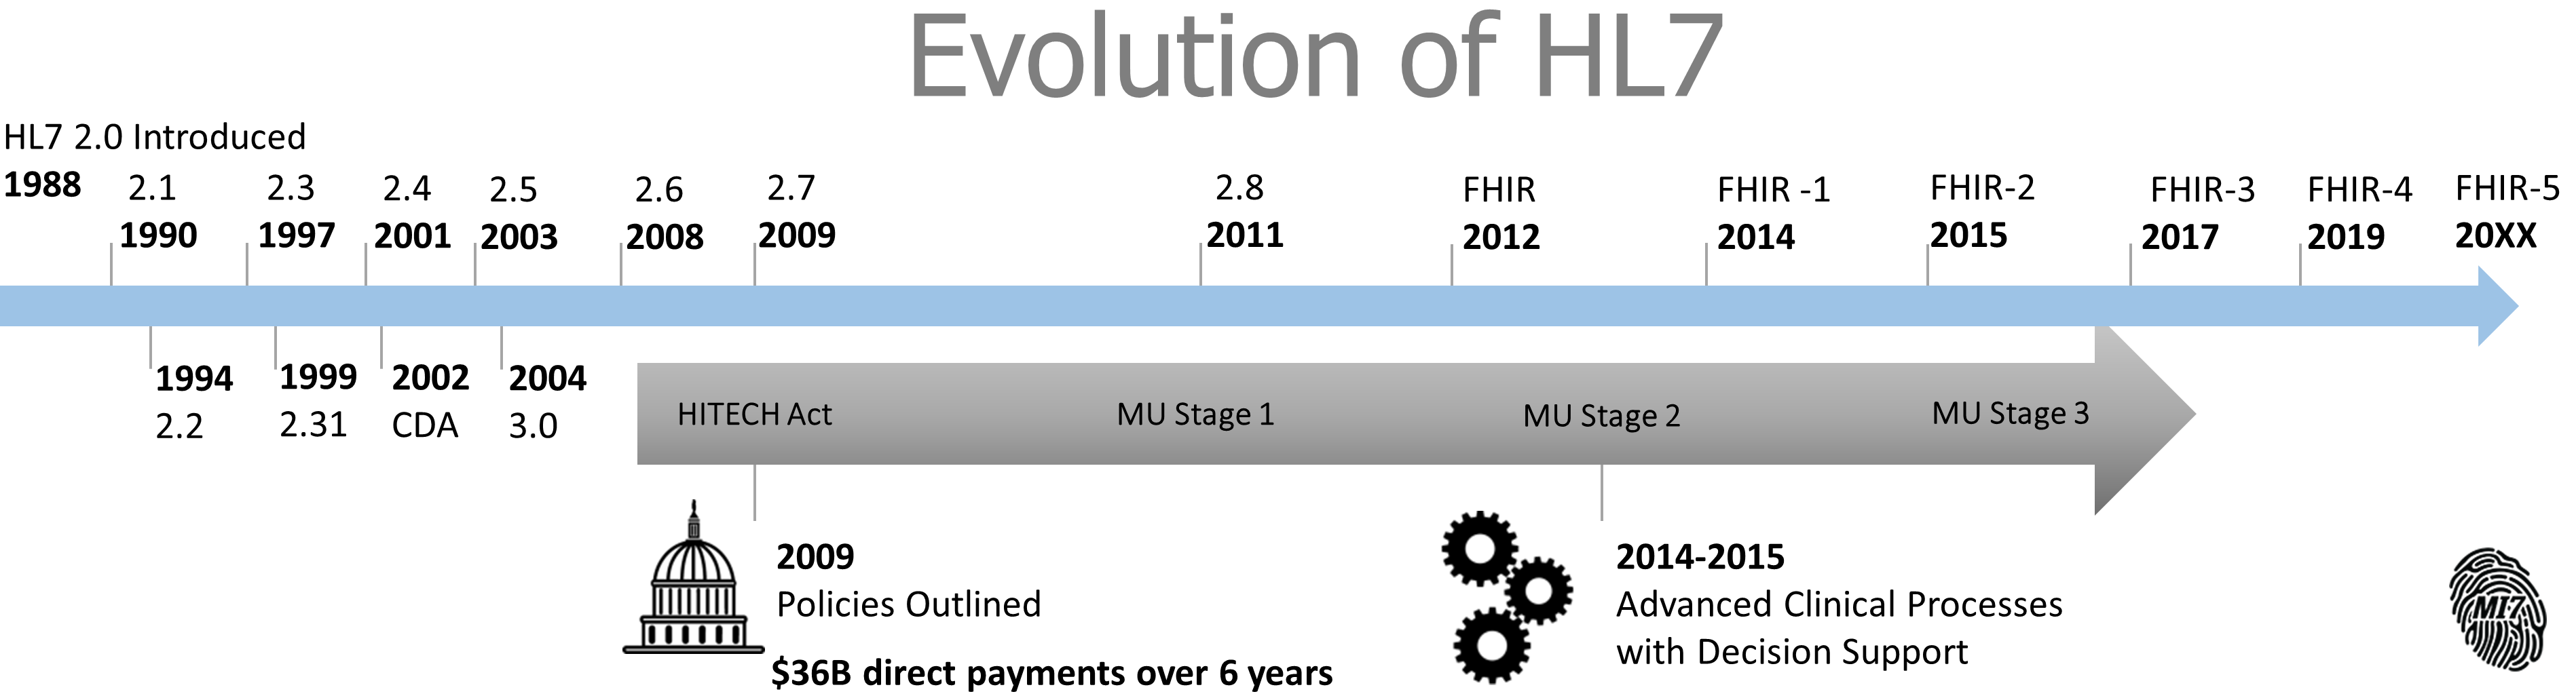 HL7 evolution-3